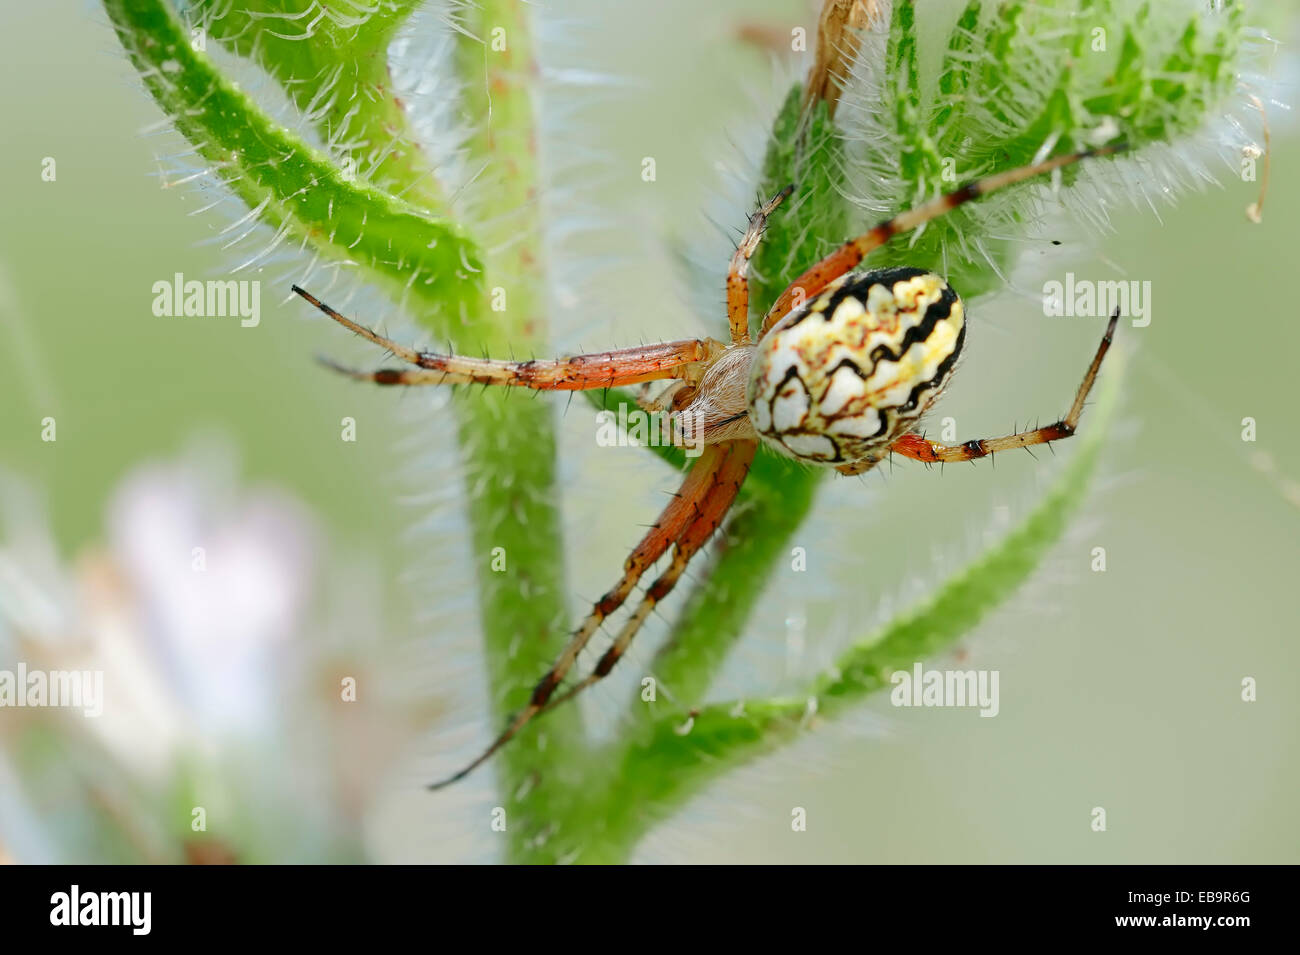 Neoscona adianta spider, Central Macedonia, Greece Stock Photo